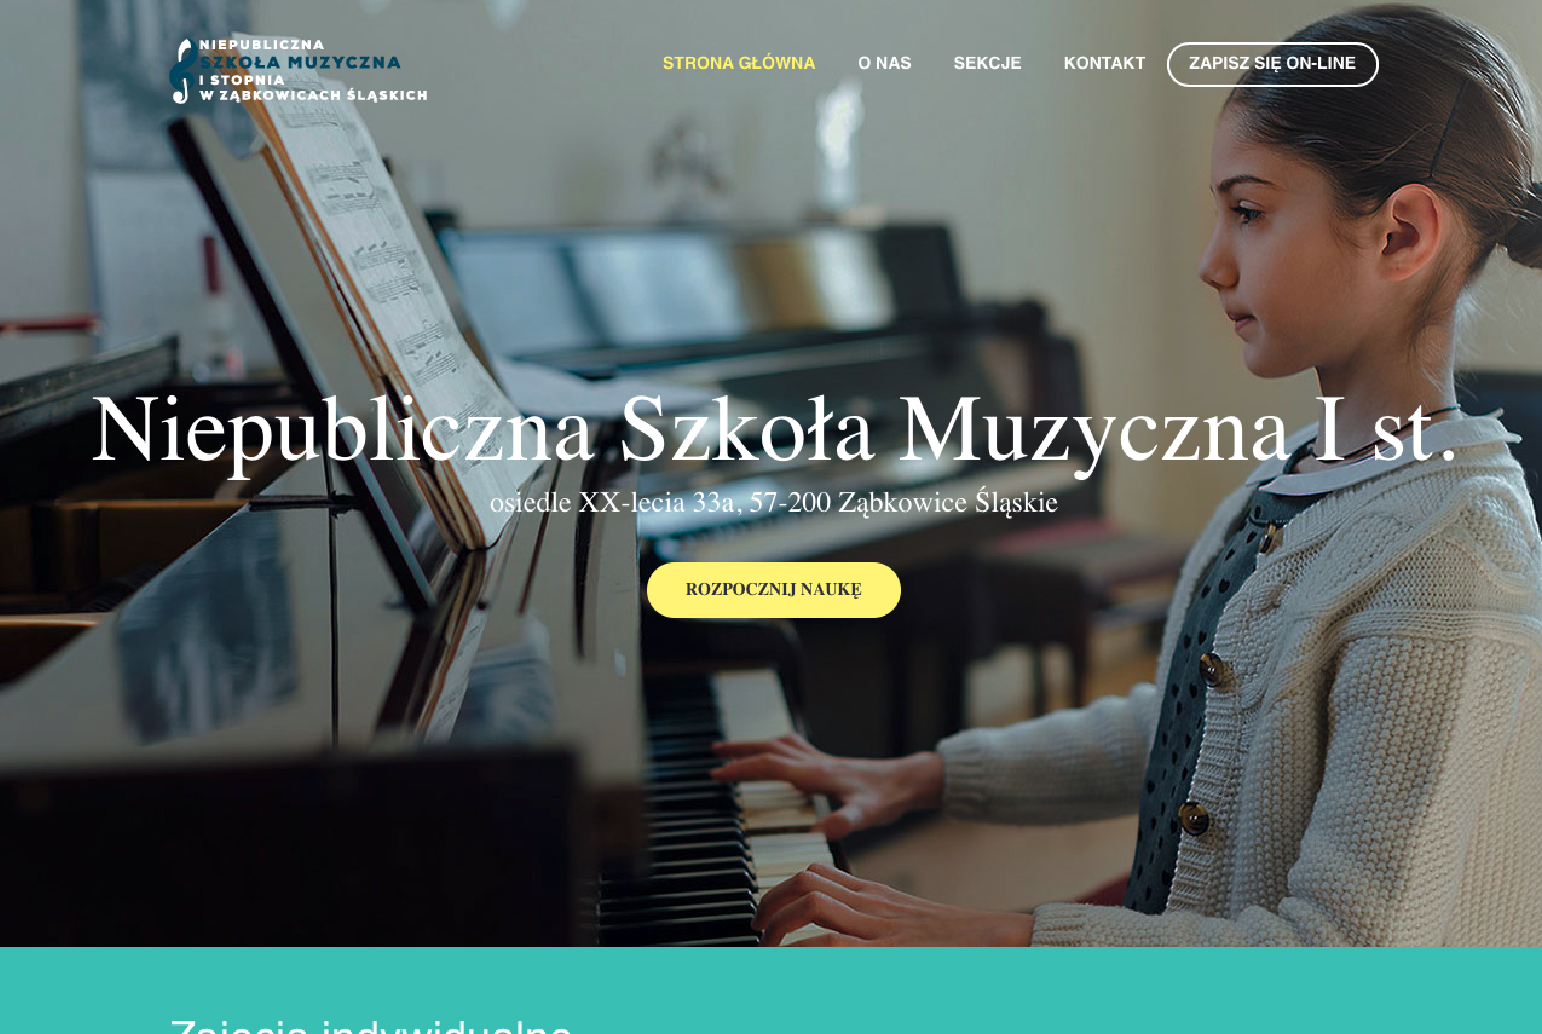 Strona internetowa wykonana przez NK studio Reklamy dla Szkoły Muzycznej z Ząbkowic Śląskich